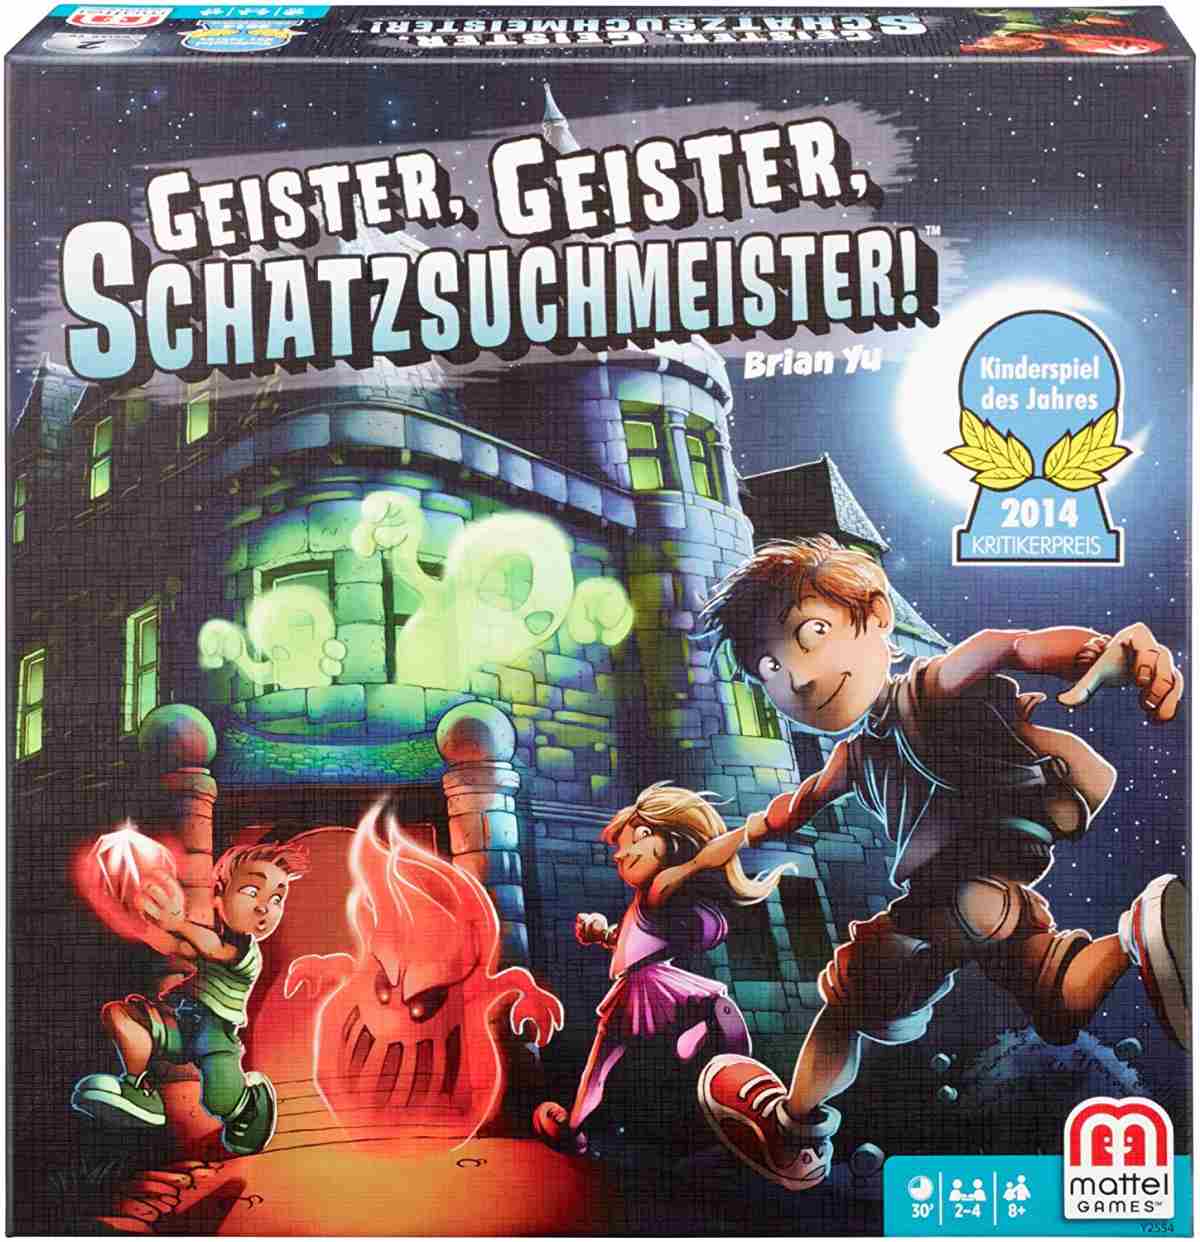 Geister Geister Schatzsuchmeister Spielanleitung PDF Download 0 (0)